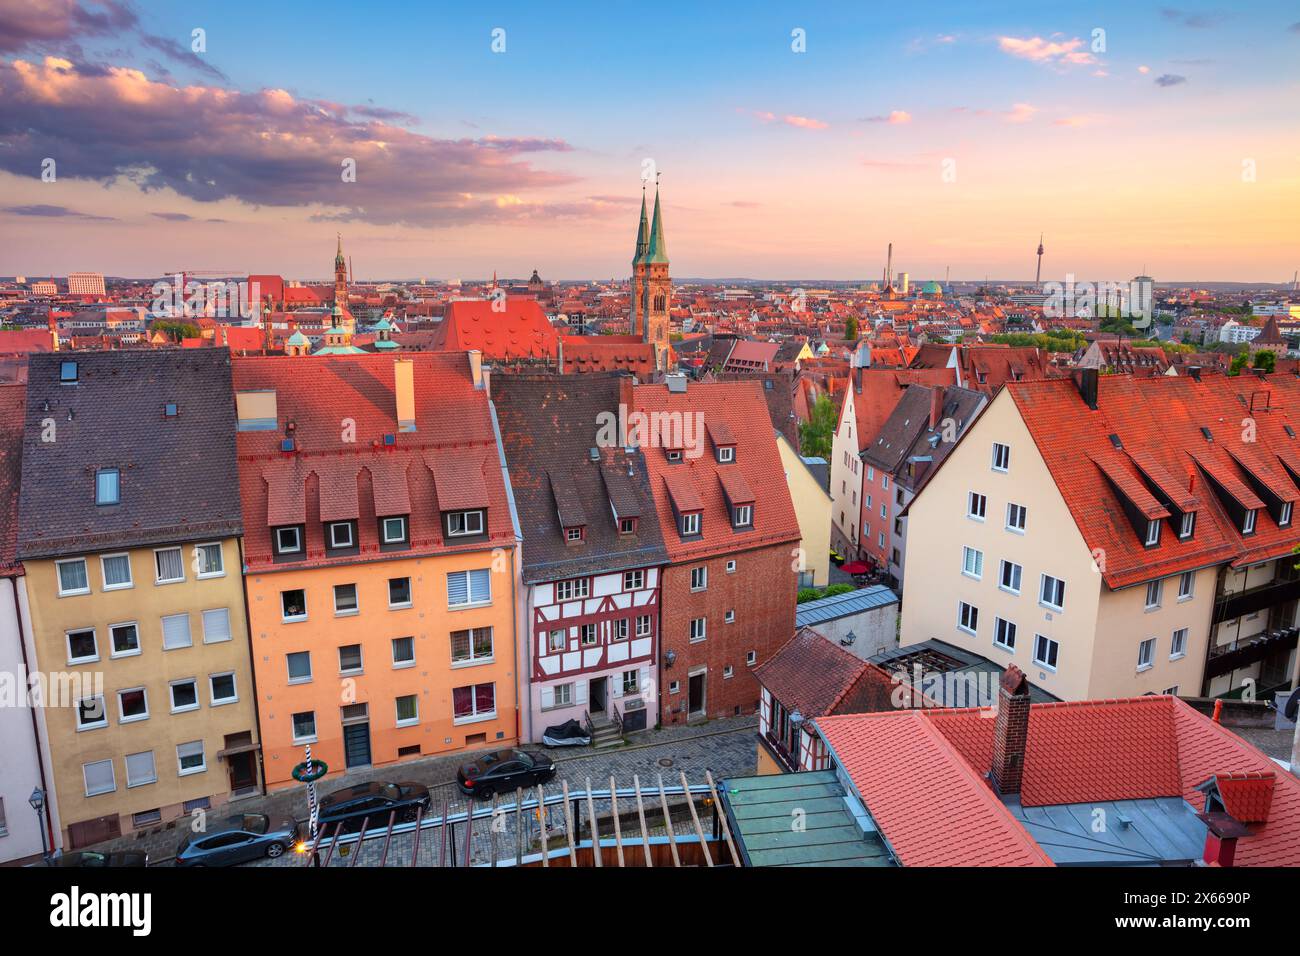 Nuremberg, Allemagne. Image de paysage urbain aérien de la vieille ville de Nuremberg, Allemagne au magnifique coucher de soleil d'été. Banque D'Images